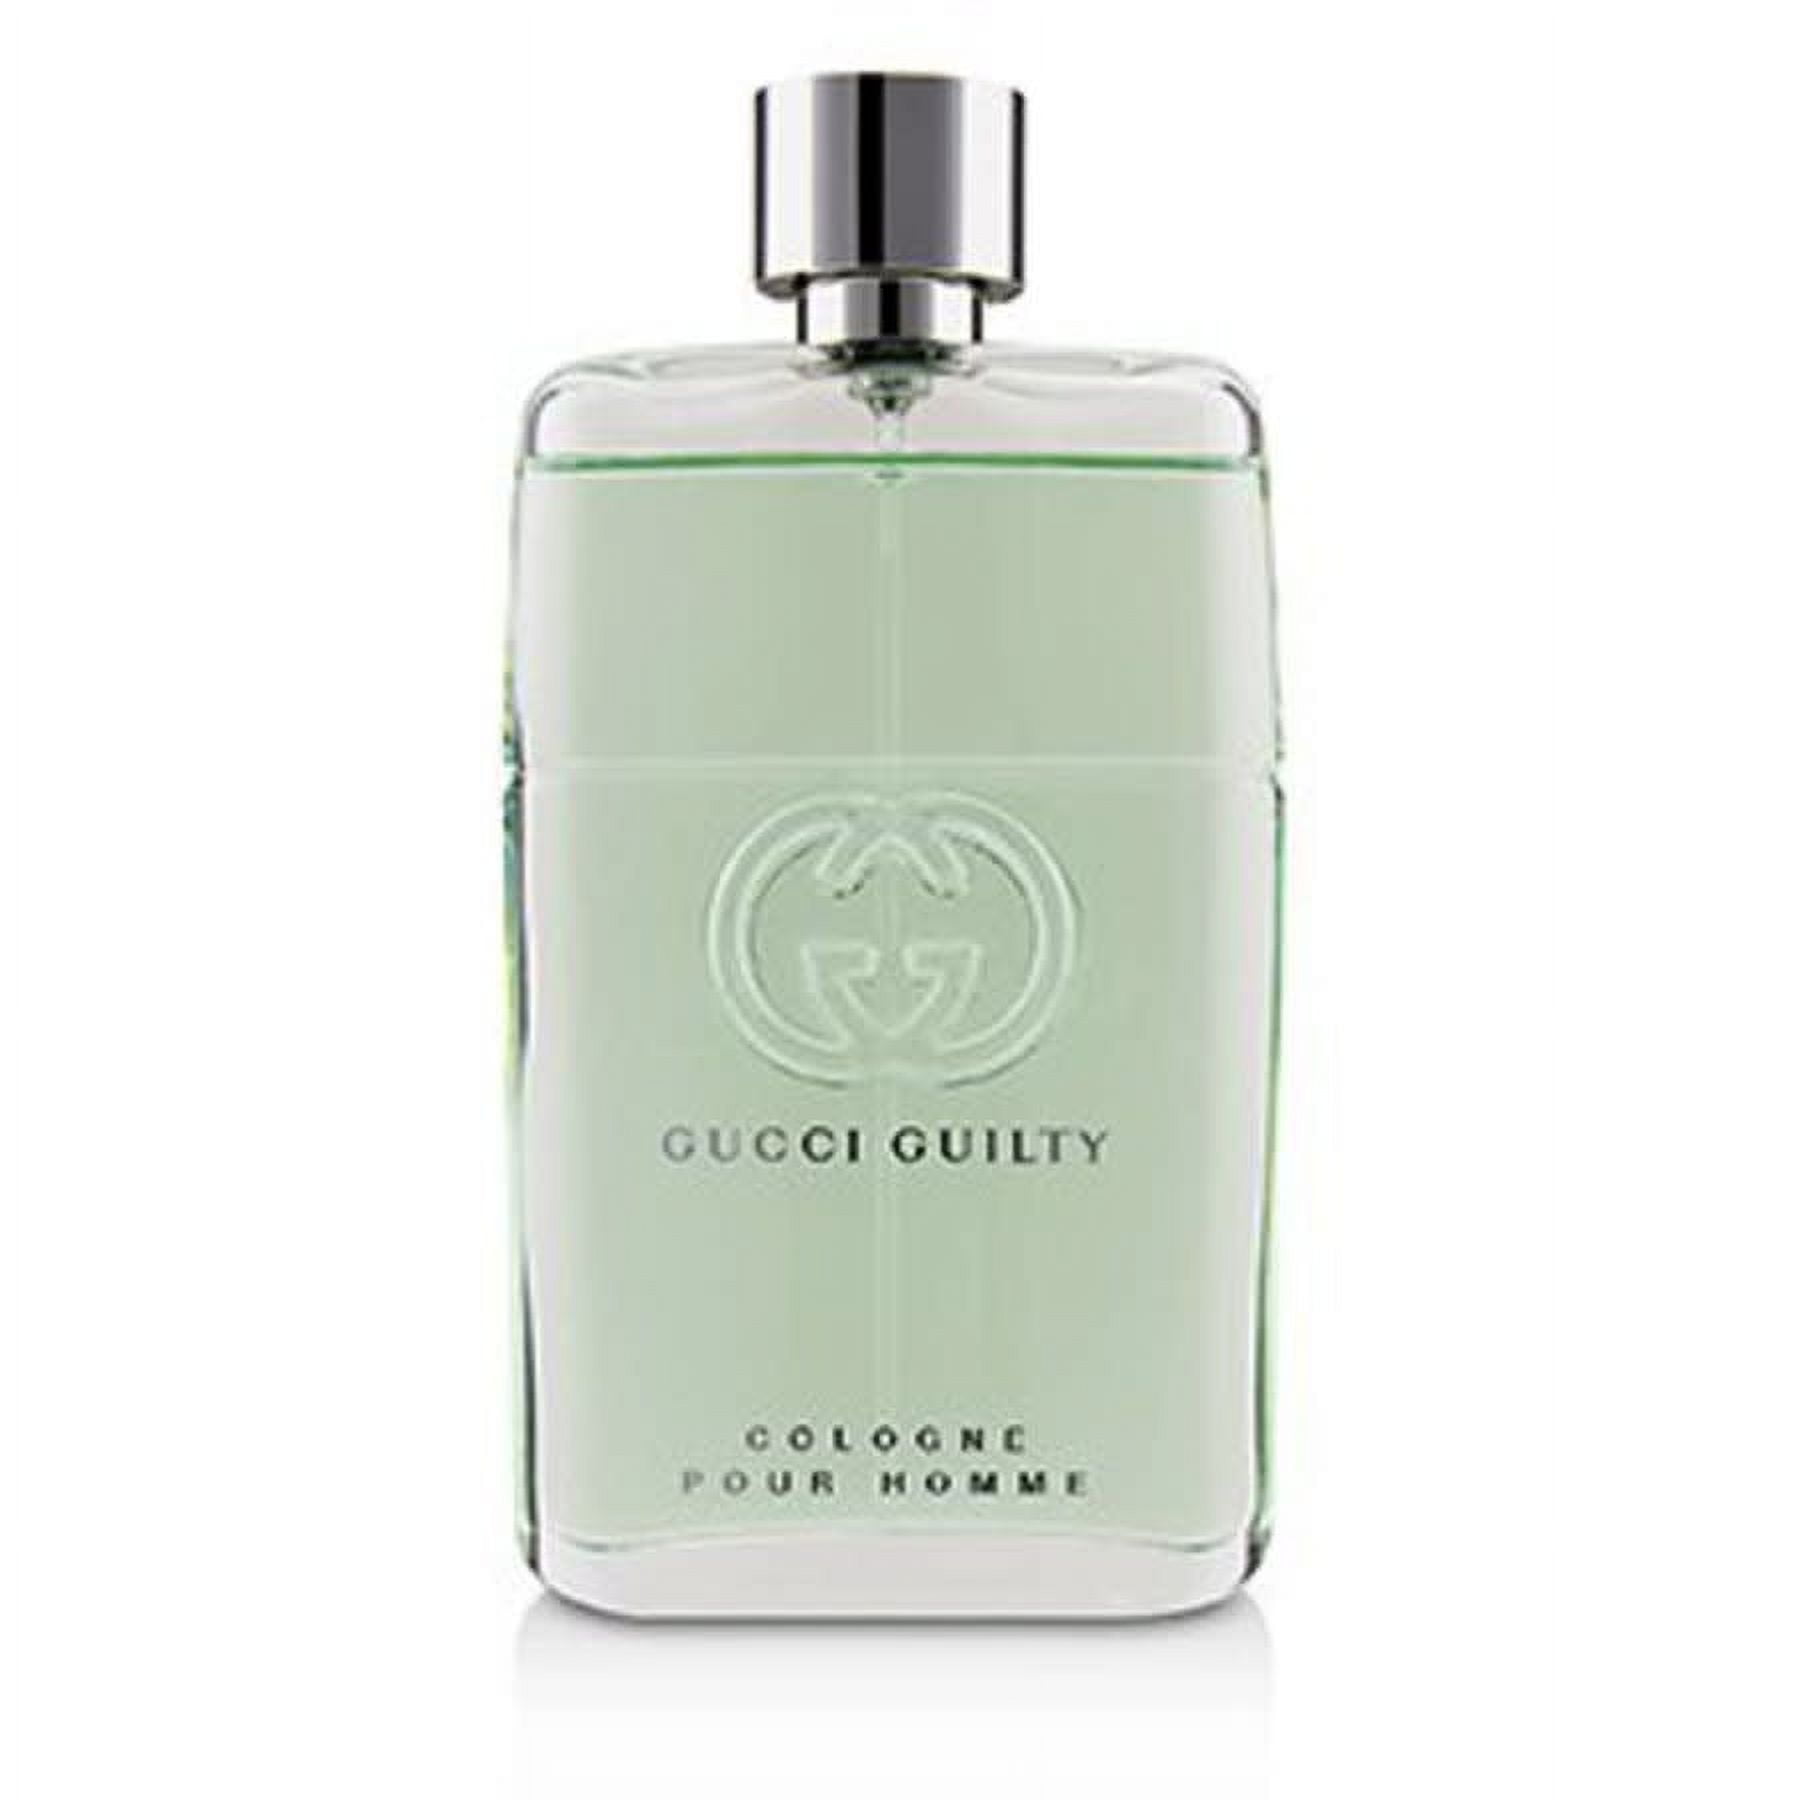 Gucci Guilty de Men, oz for Toilette, Eau Pour Homme 3.0 Cologne